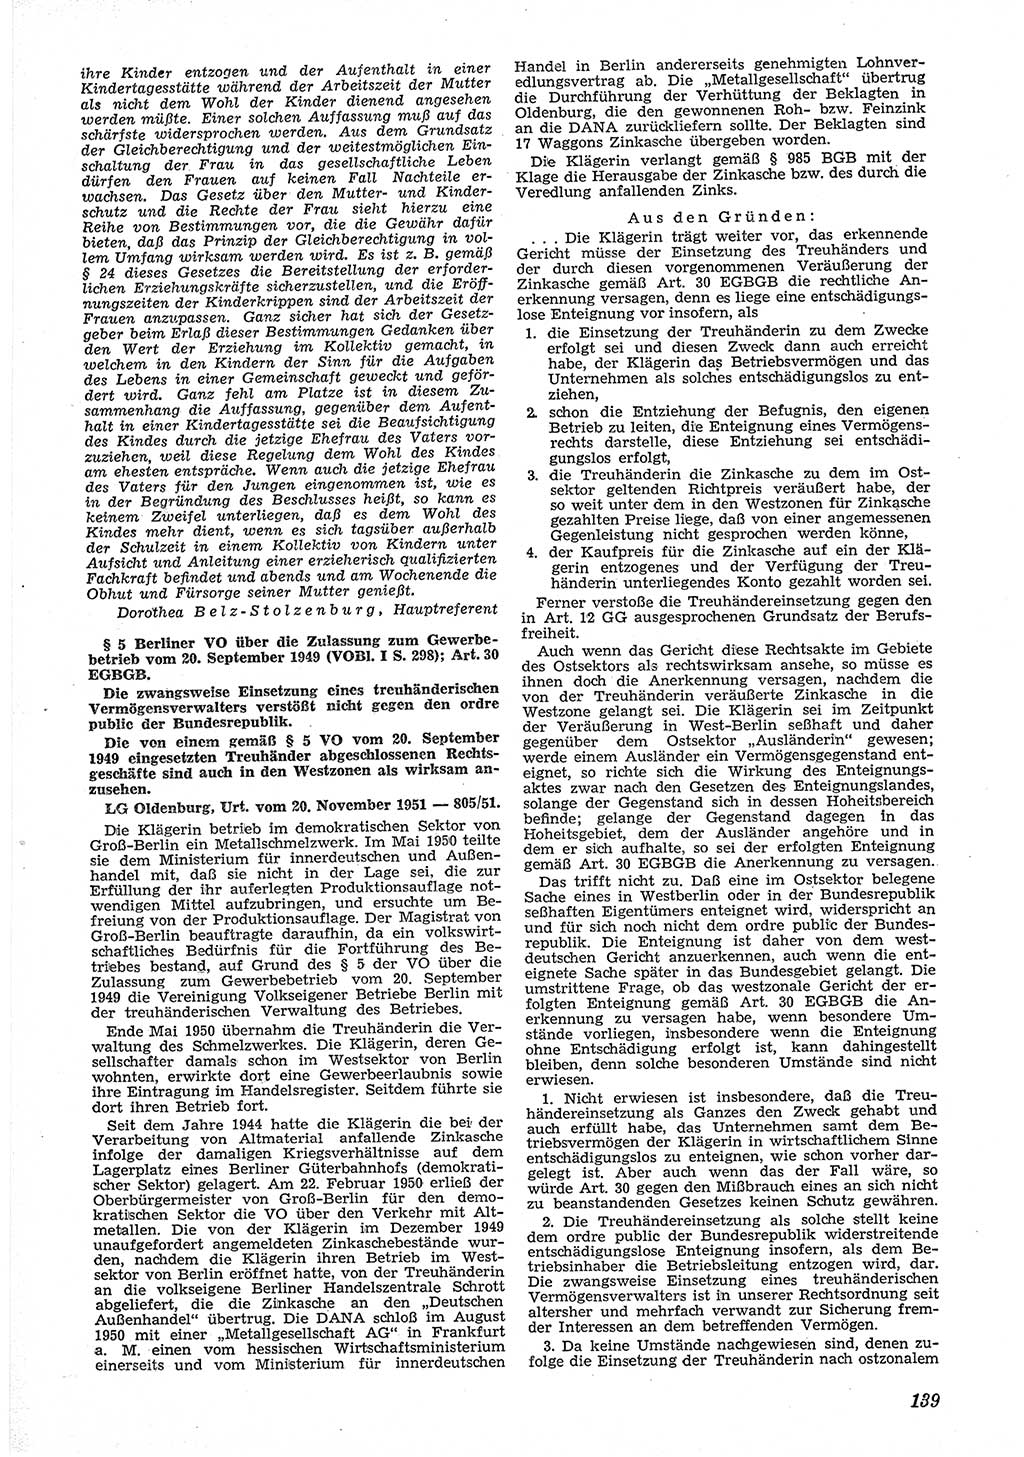 Neue Justiz (NJ), Zeitschrift für Recht und Rechtswissenschaft [Deutsche Demokratische Republik (DDR)], 6. Jahrgang 1952, Seite 139 (NJ DDR 1952, S. 139)